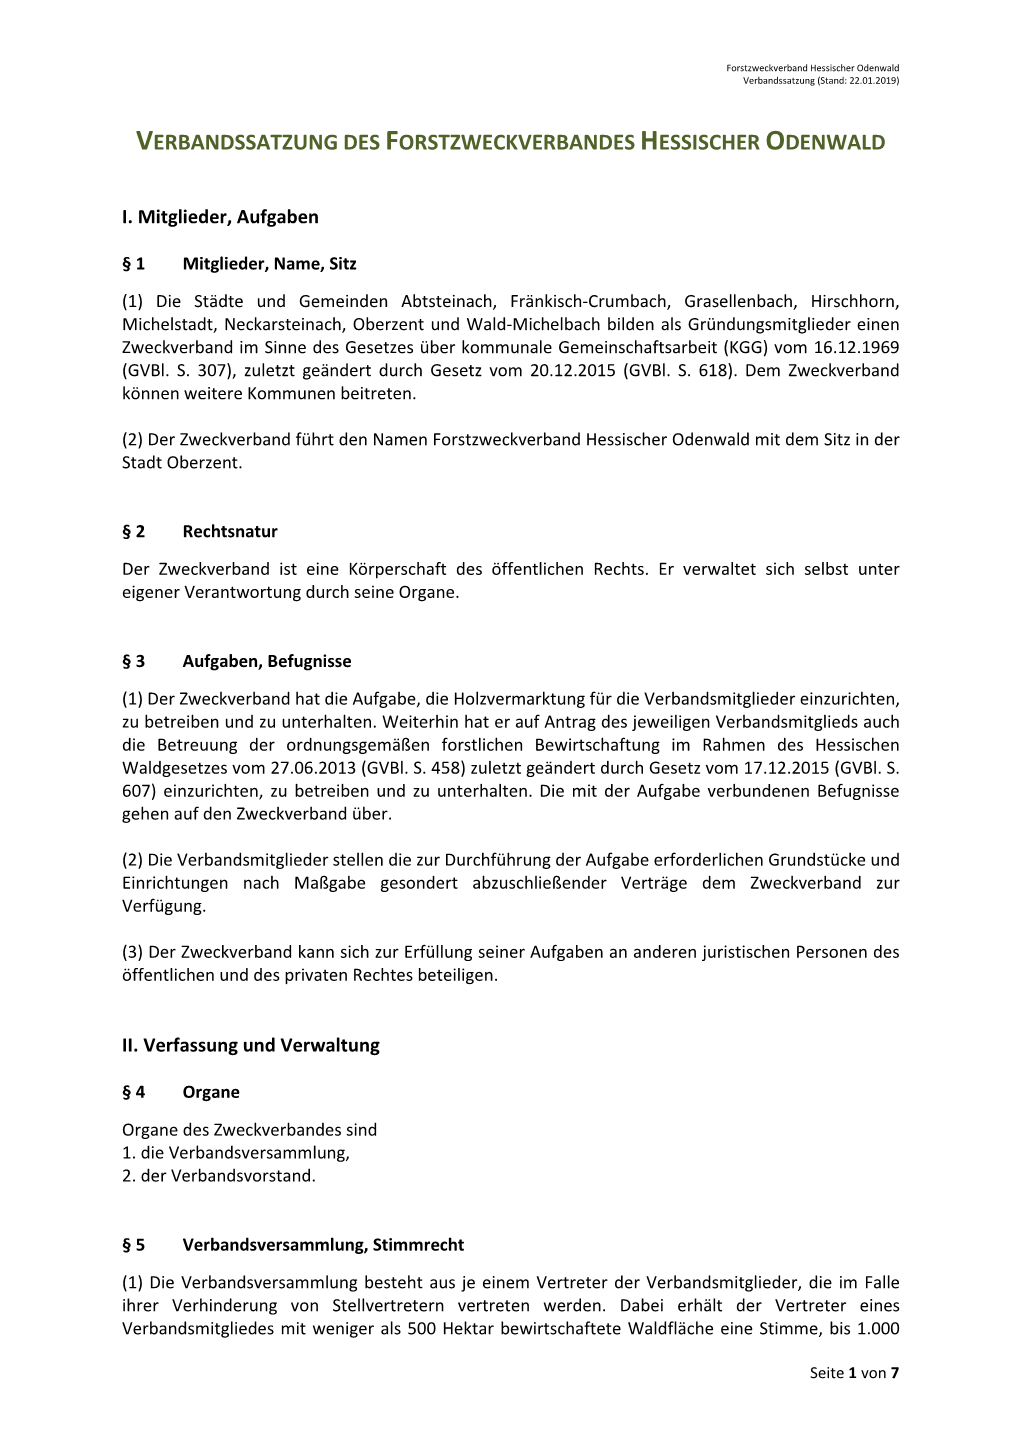 Verbandssatzung Des Forstzweckverbandes Hessischer Odenwald